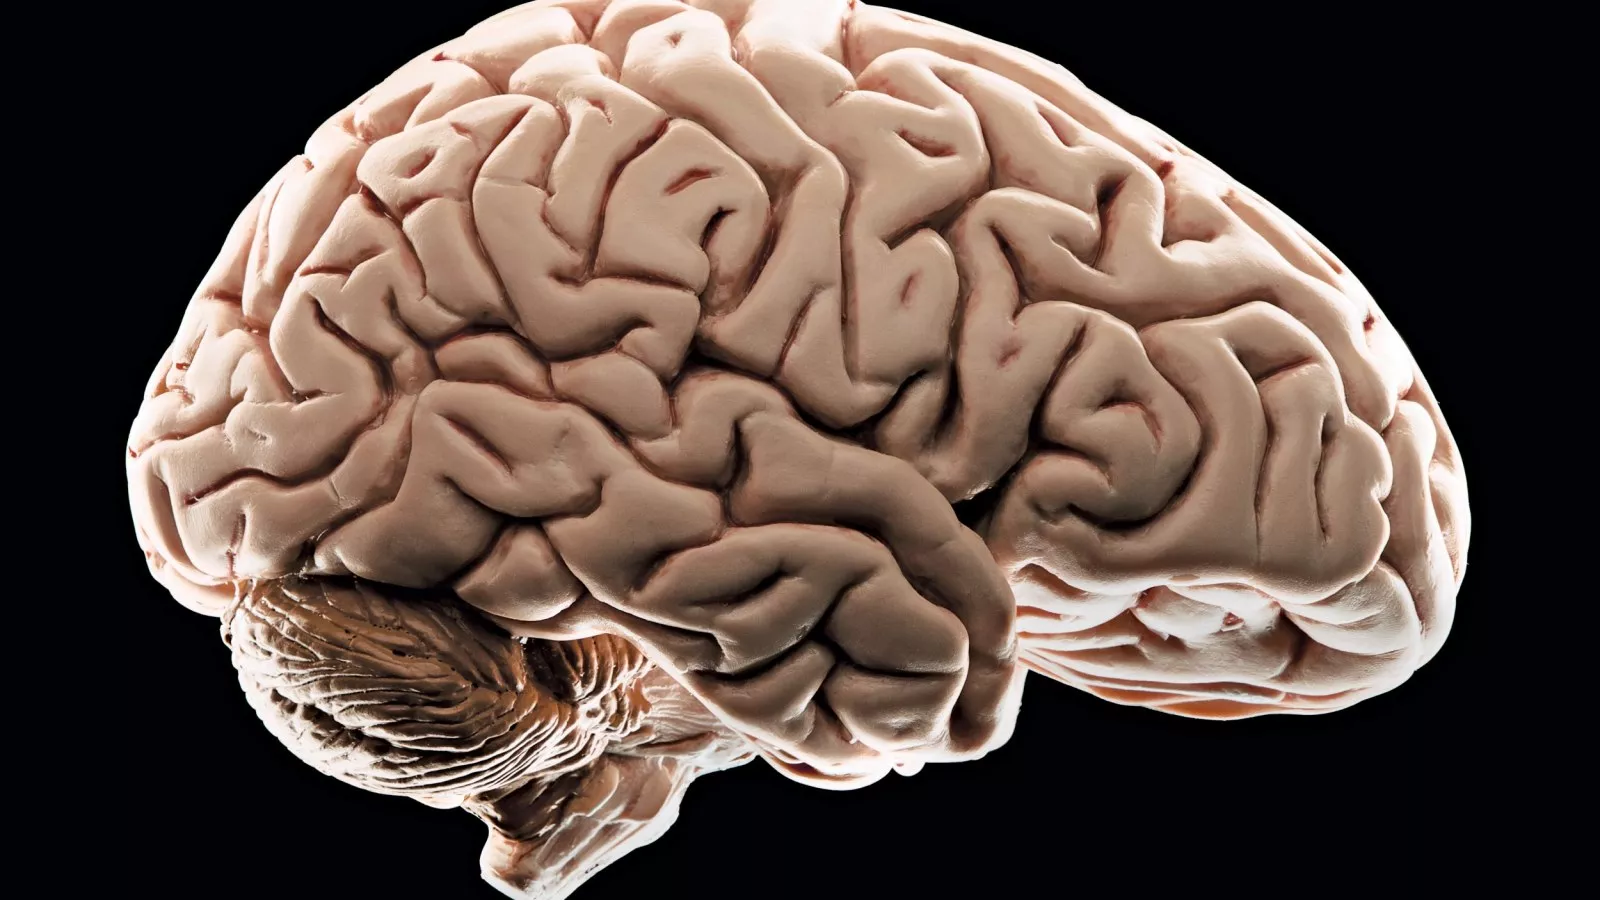 startling finds on teenage brains